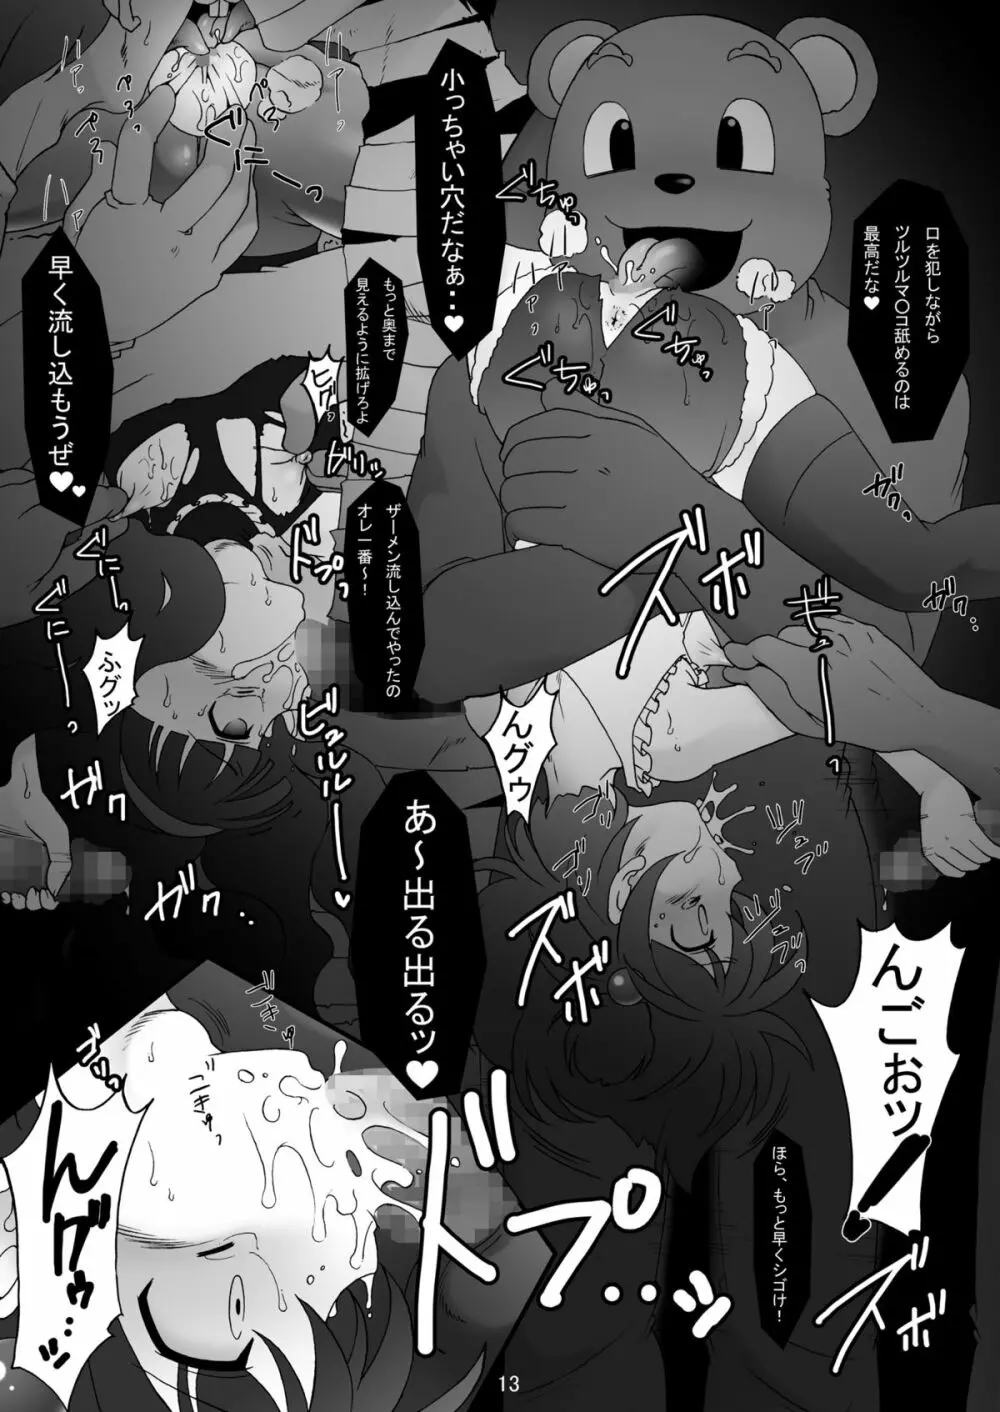 sakura twilight time - page13